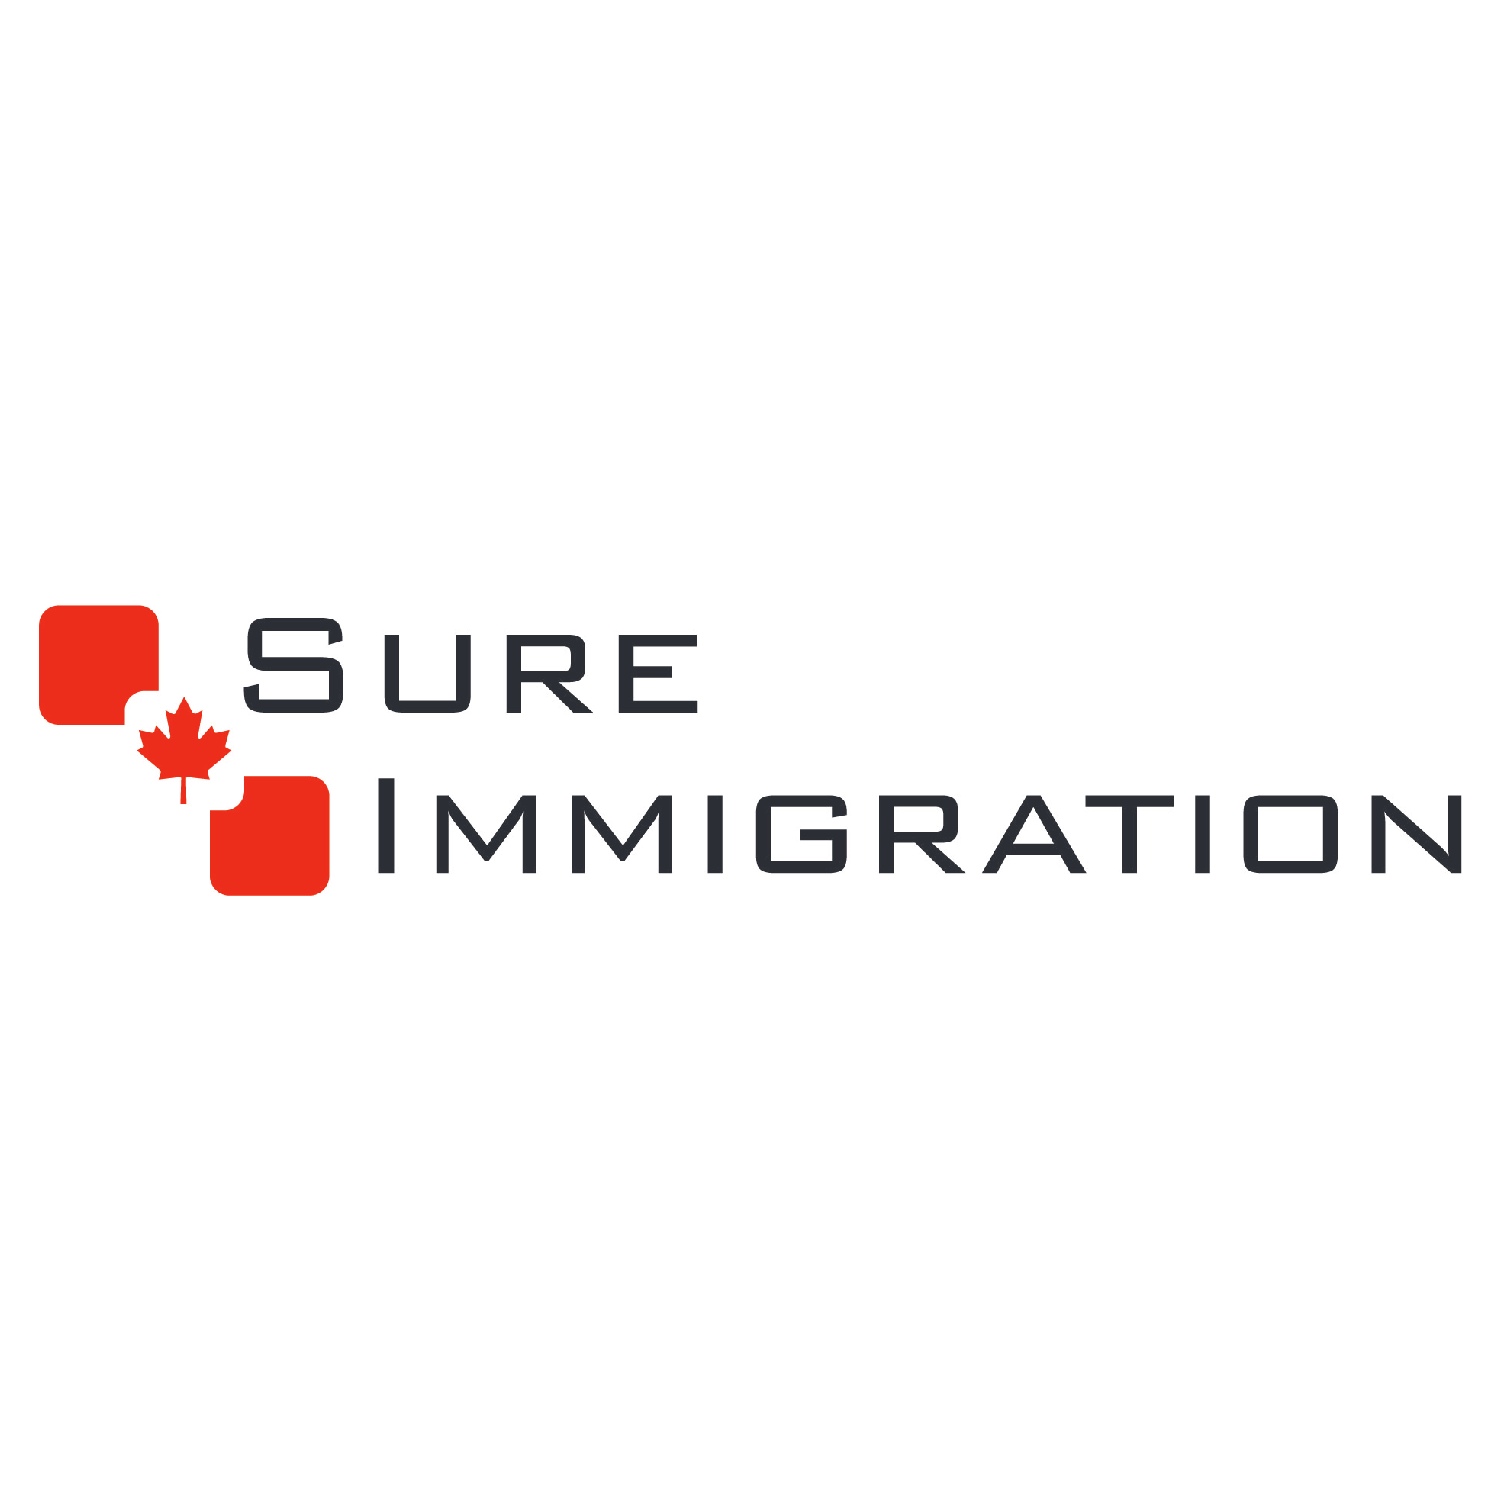 Sure Immigration Ltd